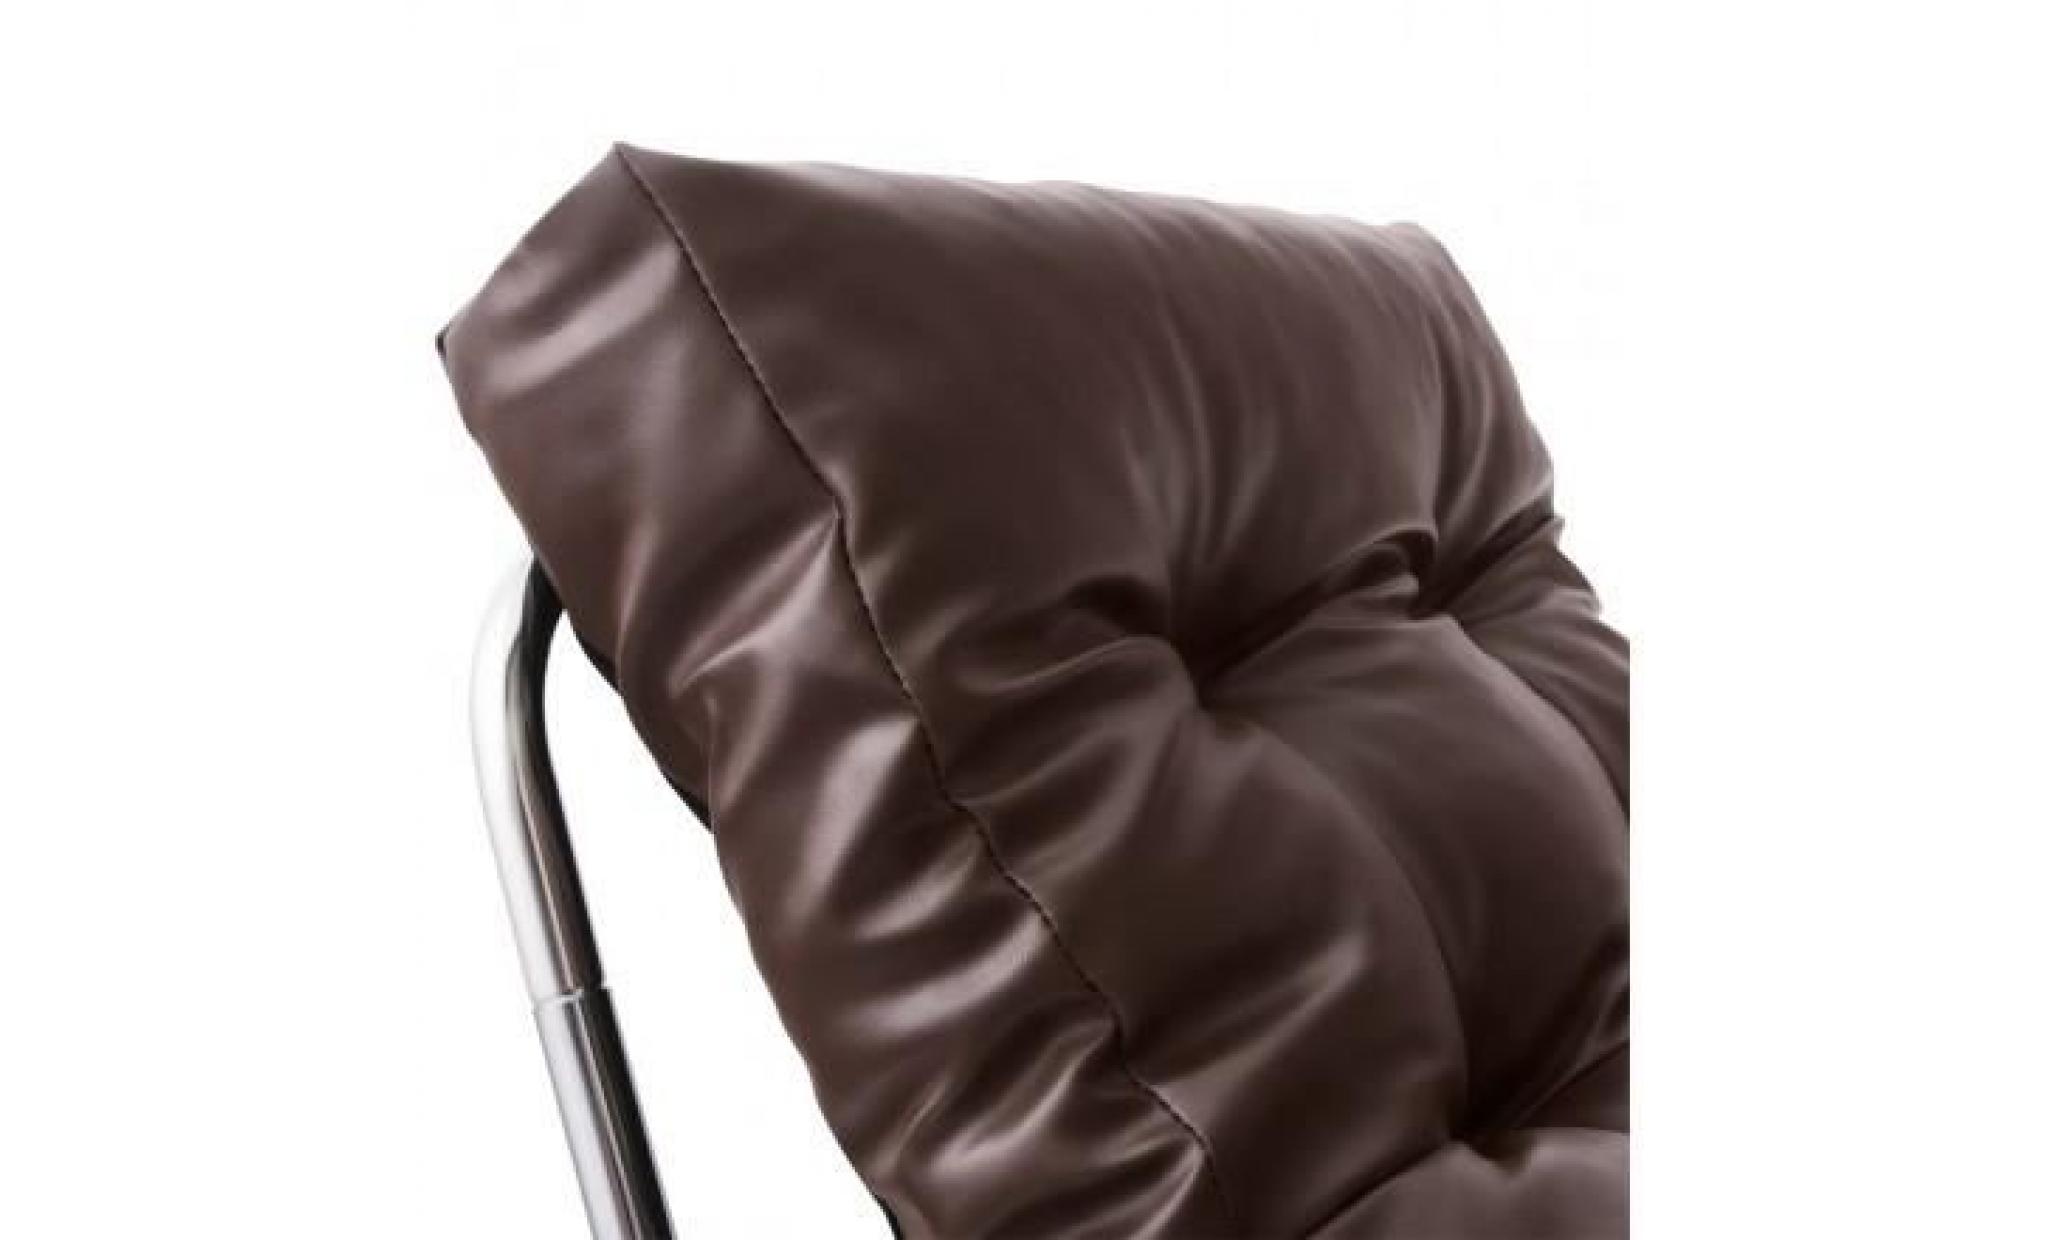 fauteuil design isere en simil cuir (marron) pas cher